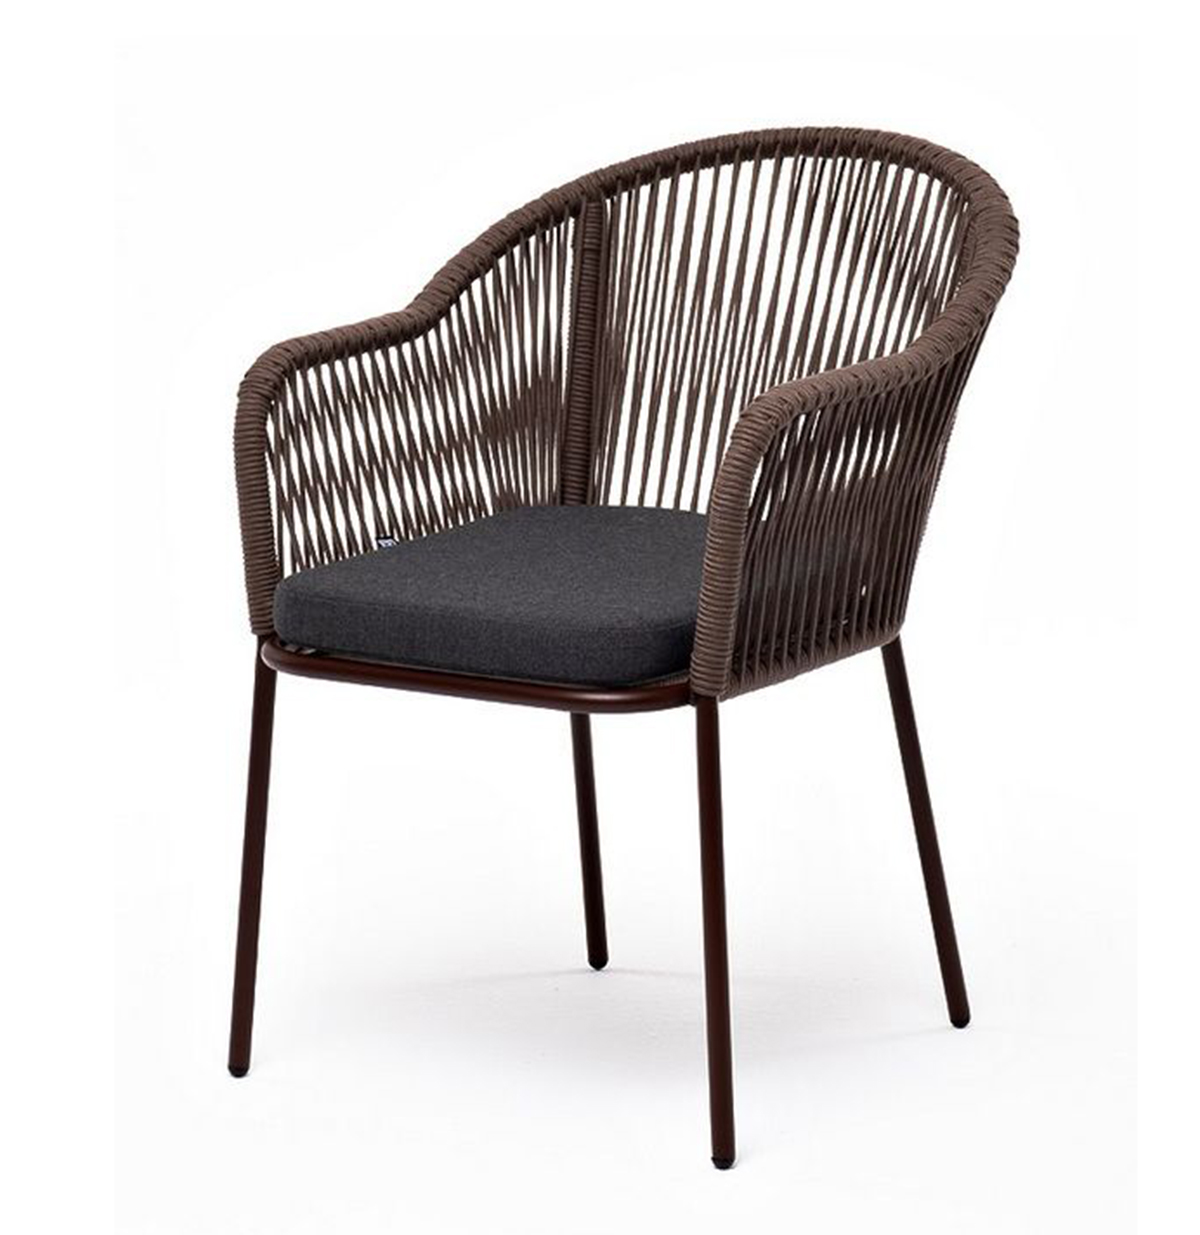 Плетеный стул из роупа Лион коричневый, ткань темно-серая плетеный стул из роупа лион коричневый ткань темно серая